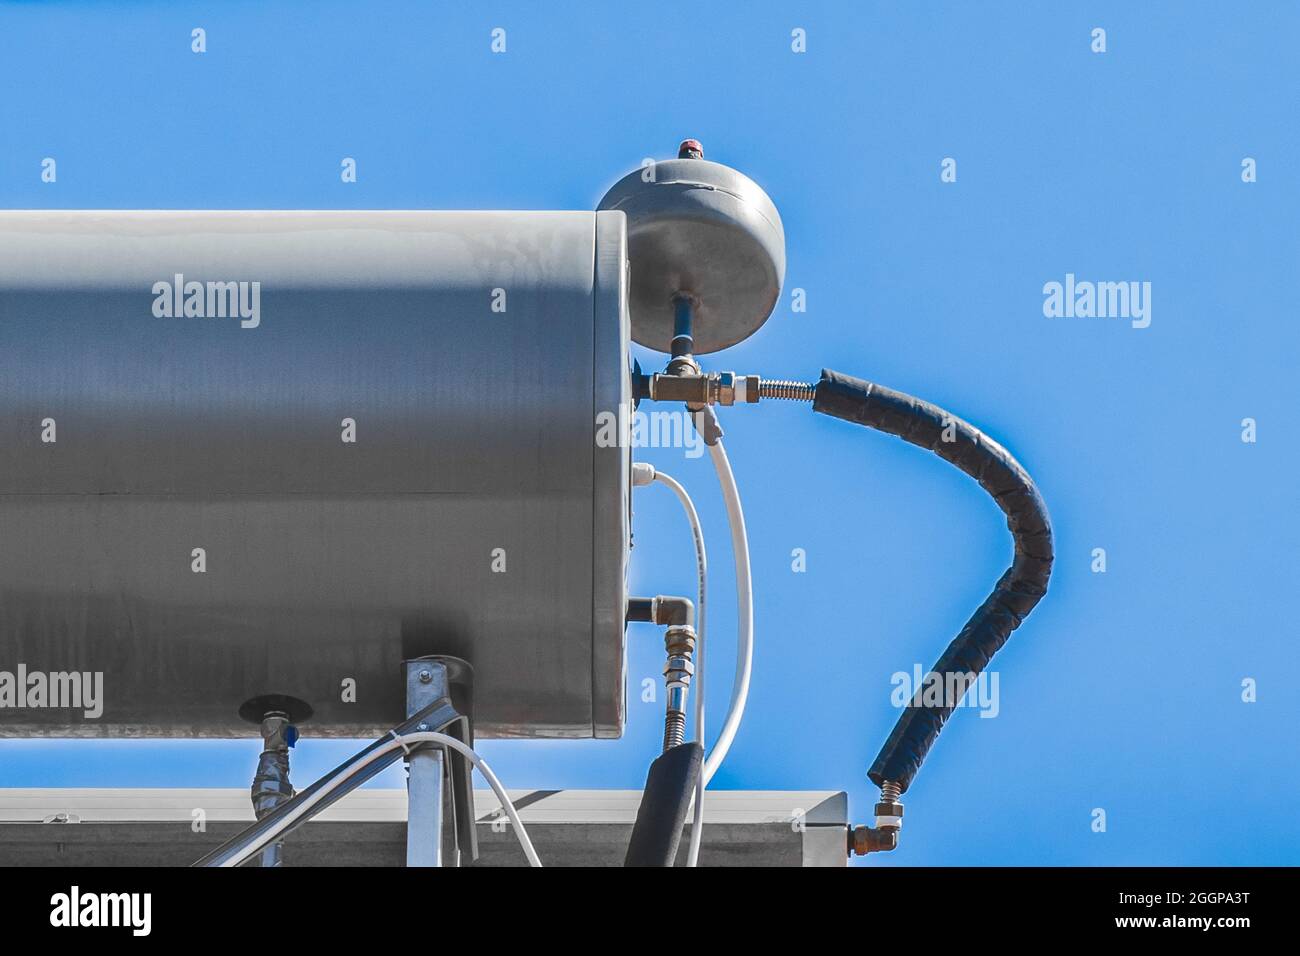 Chauffe-eau système de réservoir et technologie chaude sur le toit de la maison contre le ciel bleu. Banque D'Images